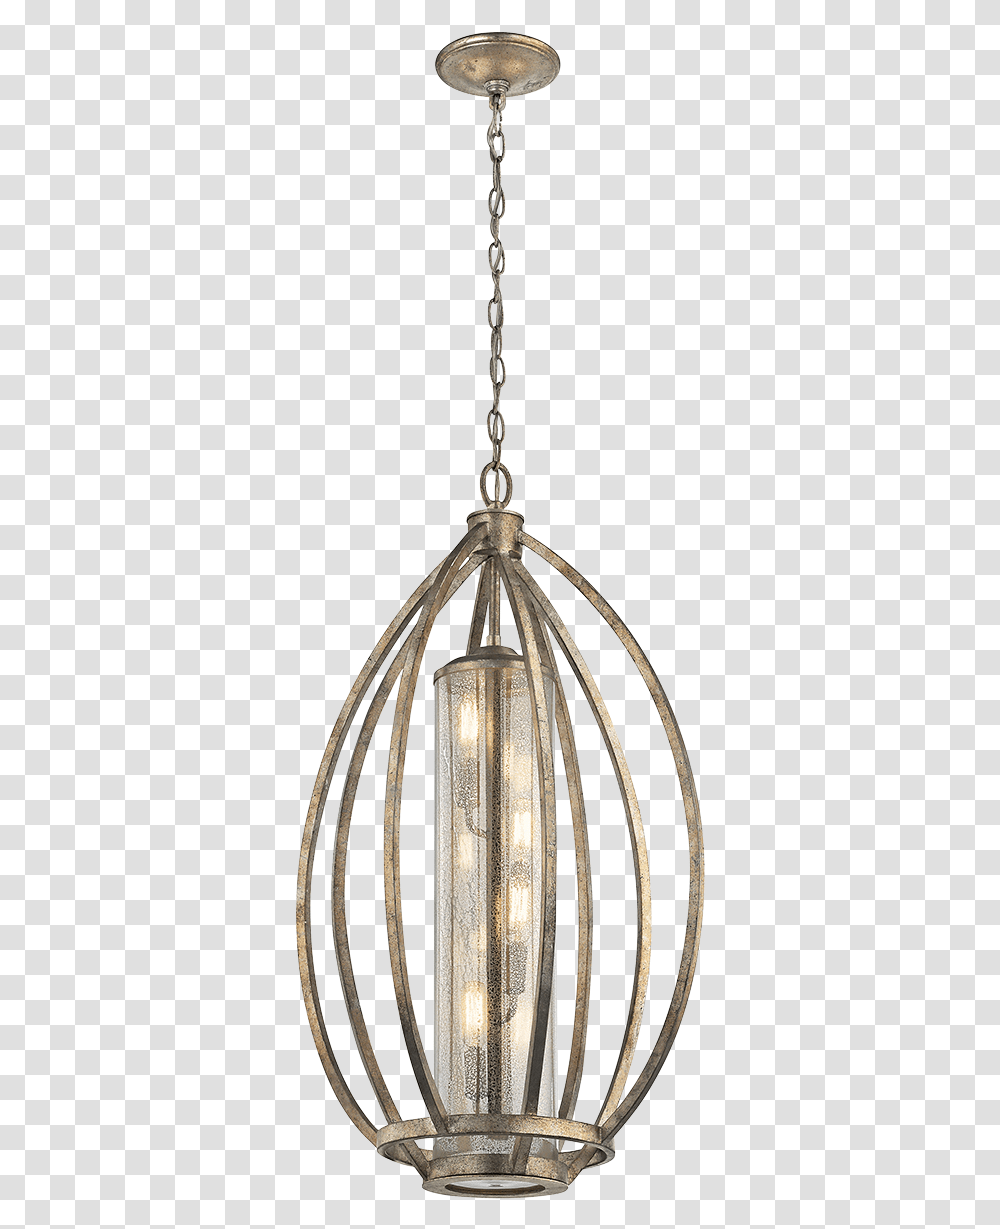 Ceiling Fixture, Light Fixture, Lamp, Ceiling Light, Chandelier Transparent Png